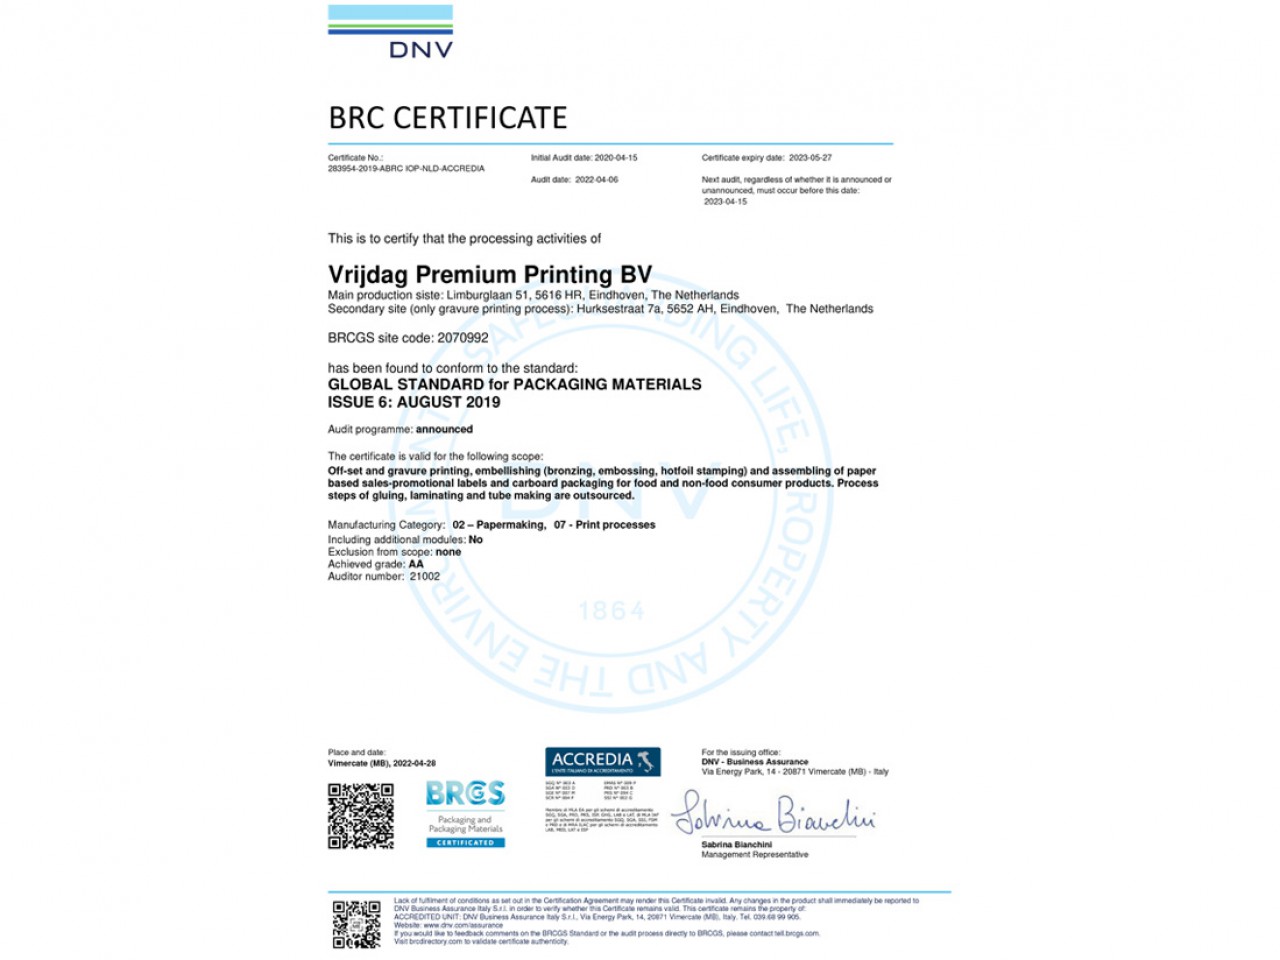 Vrijdag Premium Printing Certificat - BRCGS Packaging Materials, Issue 6 - Achieved Grade: AA